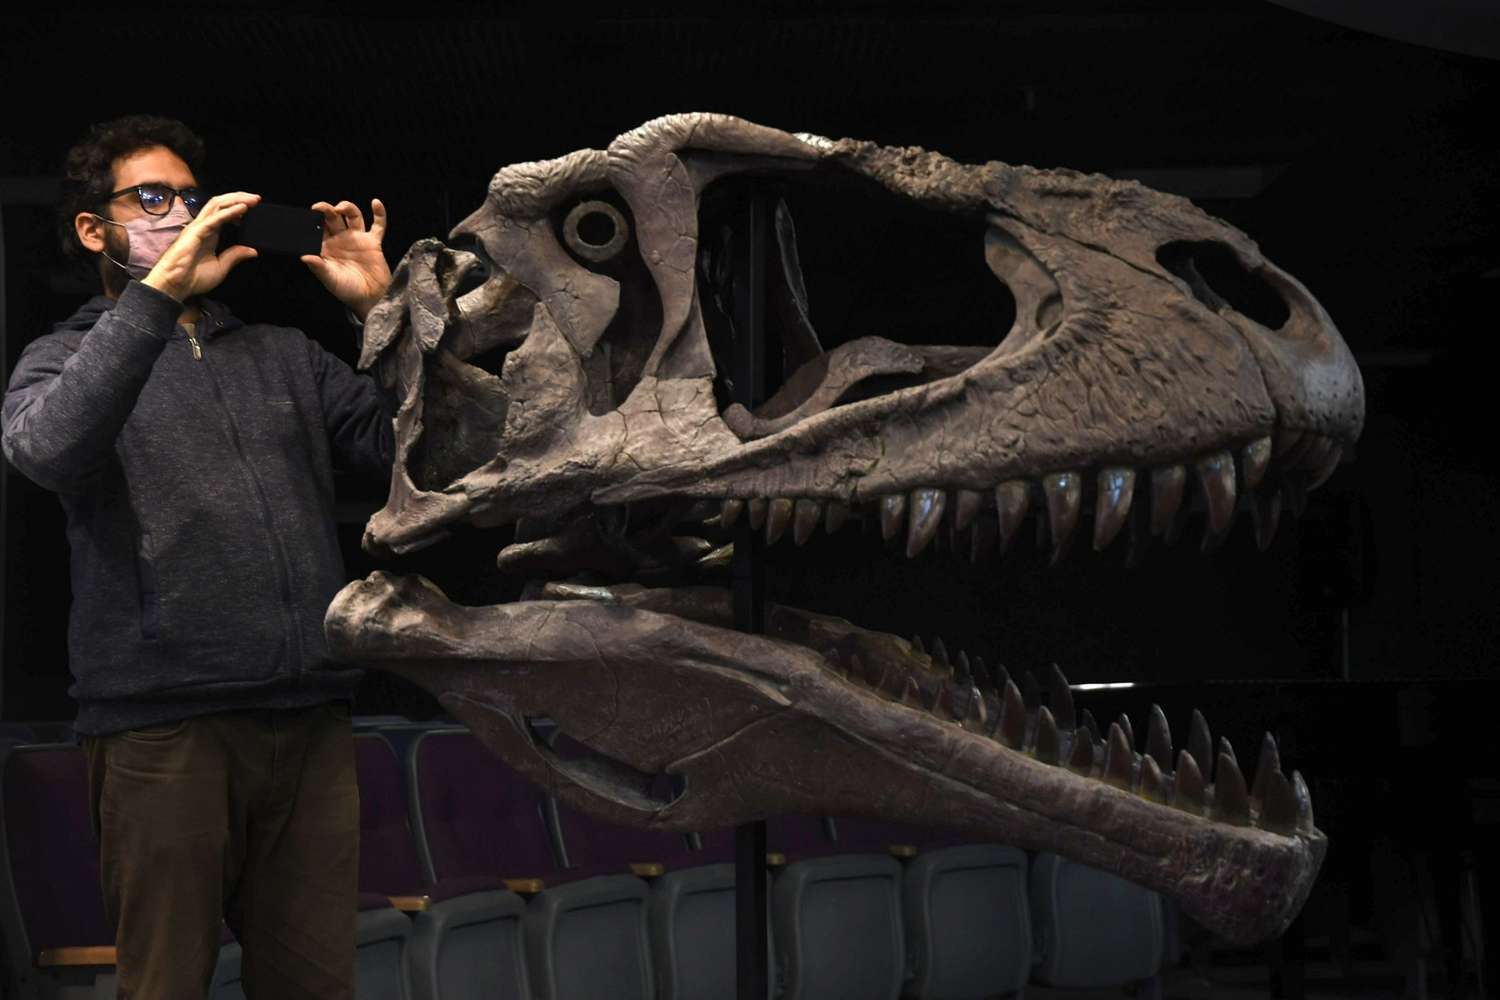 Presentaron a Meraxes, un nuevo dinosaurio carnívoro gigante hallado en el país